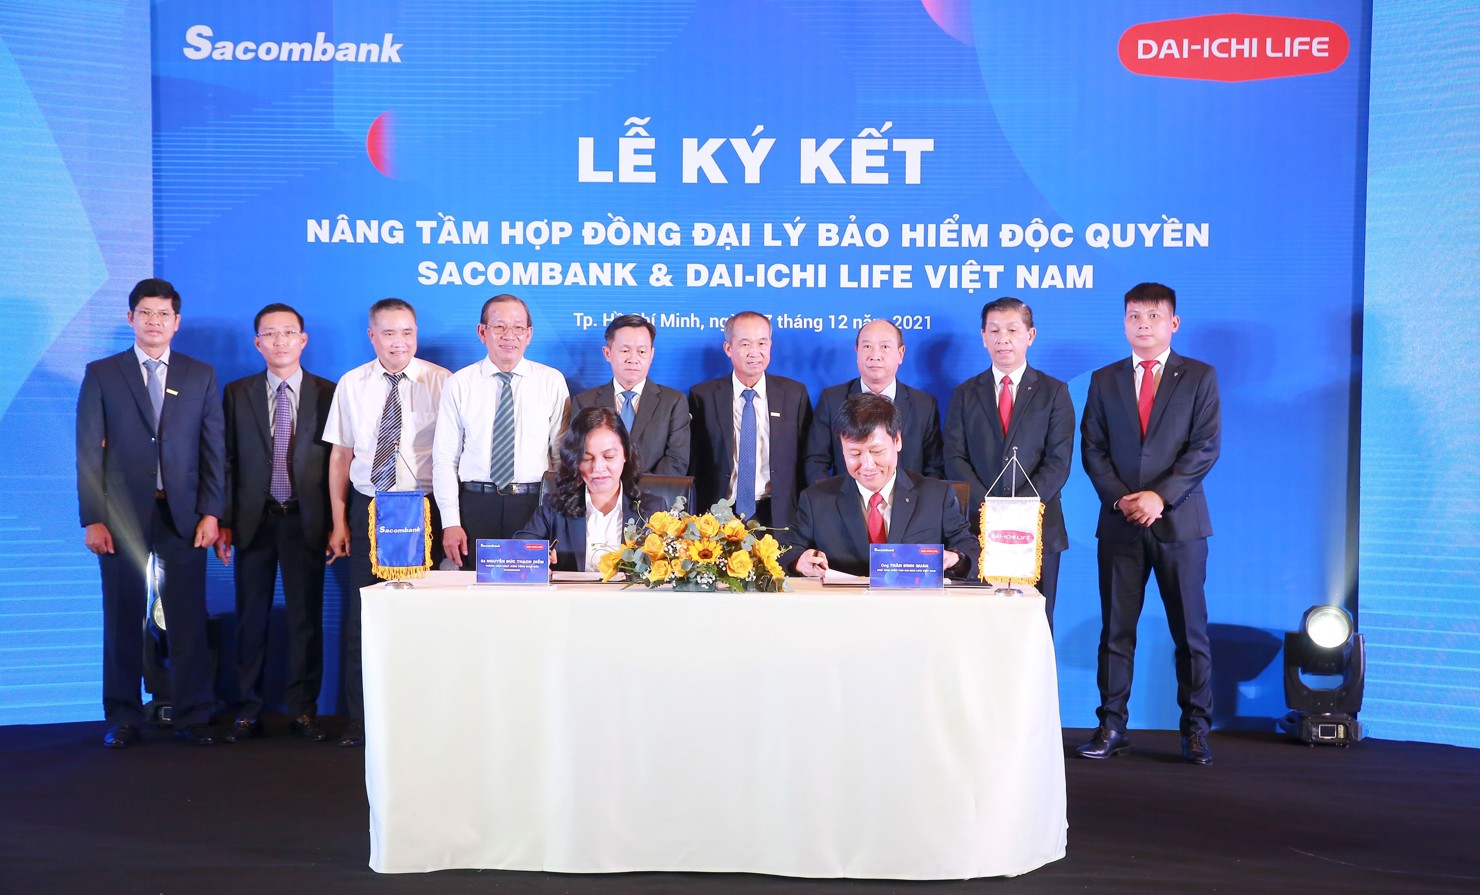 Đại diện lãnh đạo các bên chứng kiến Lễ ký kết nâng tầm hợp đồng đại lý bảo hiểm độc quyền giữa Sacombank và Công ty Bảo hiểm Nhân thọ Dai-ichi Life Việt Nam.